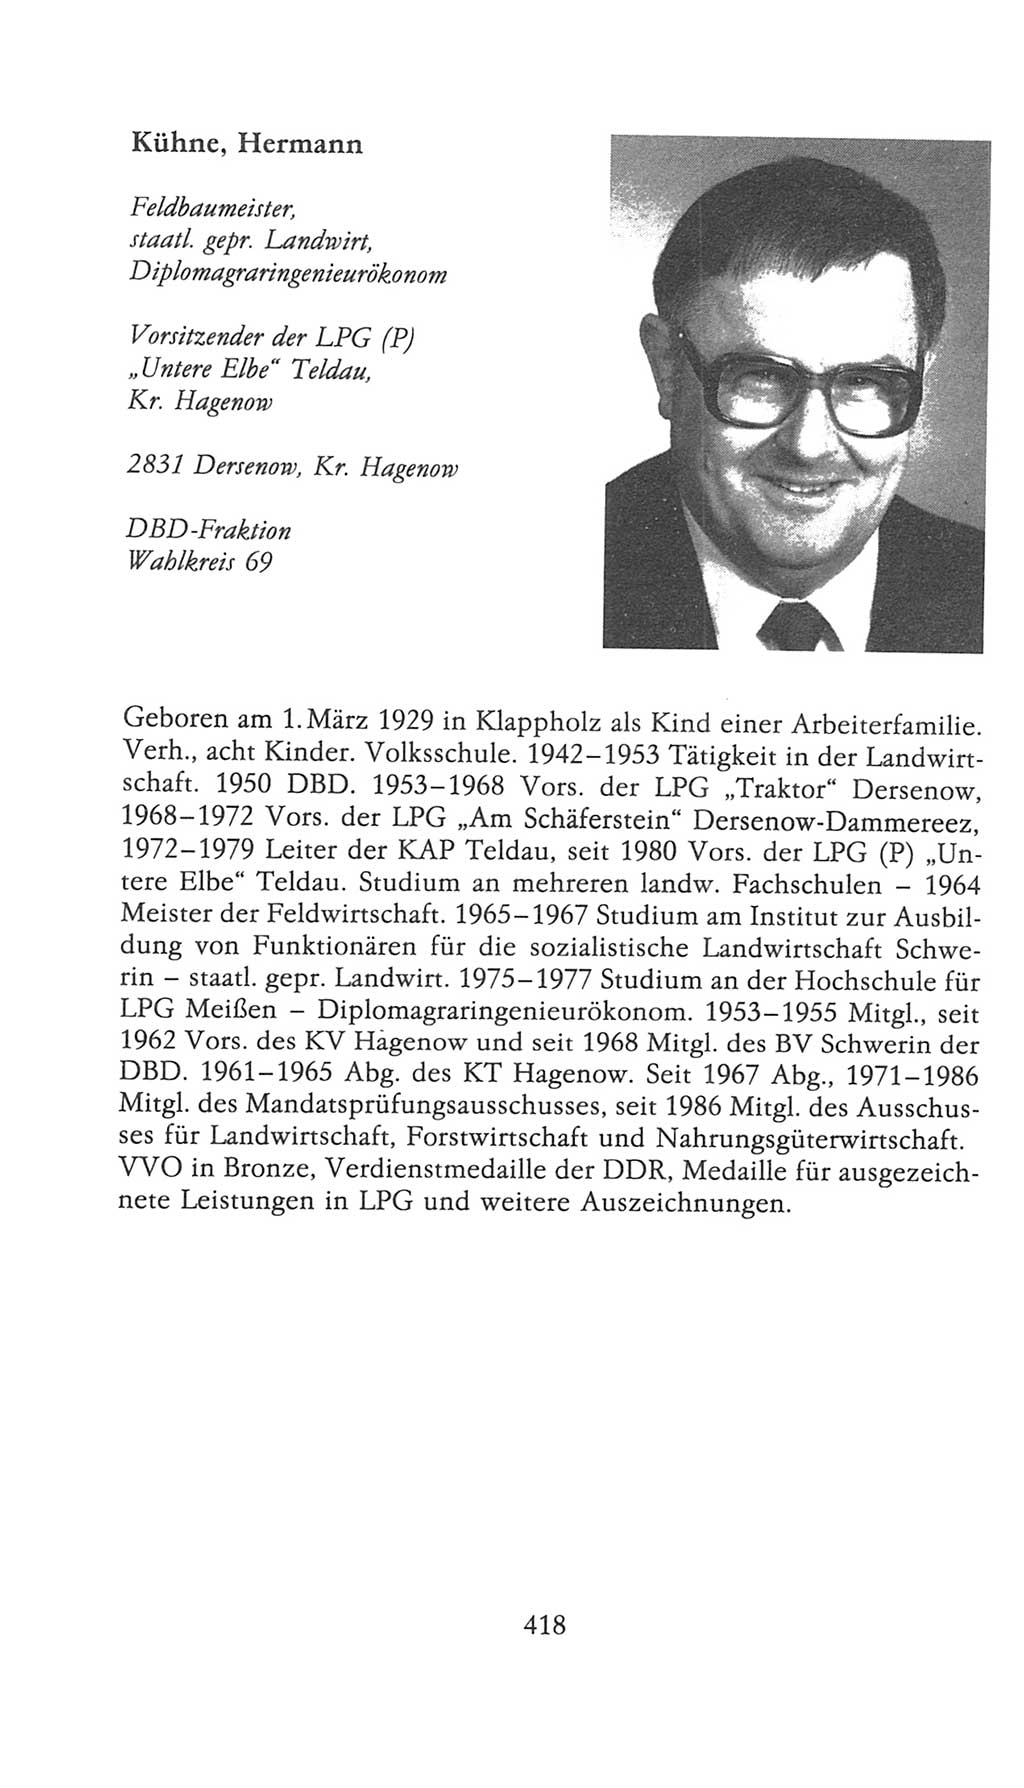 Volkskammer (VK) der Deutschen Demokratischen Republik (DDR), 9. Wahlperiode 1986-1990, Seite 418 (VK. DDR 9. WP. 1986-1990, S. 418)